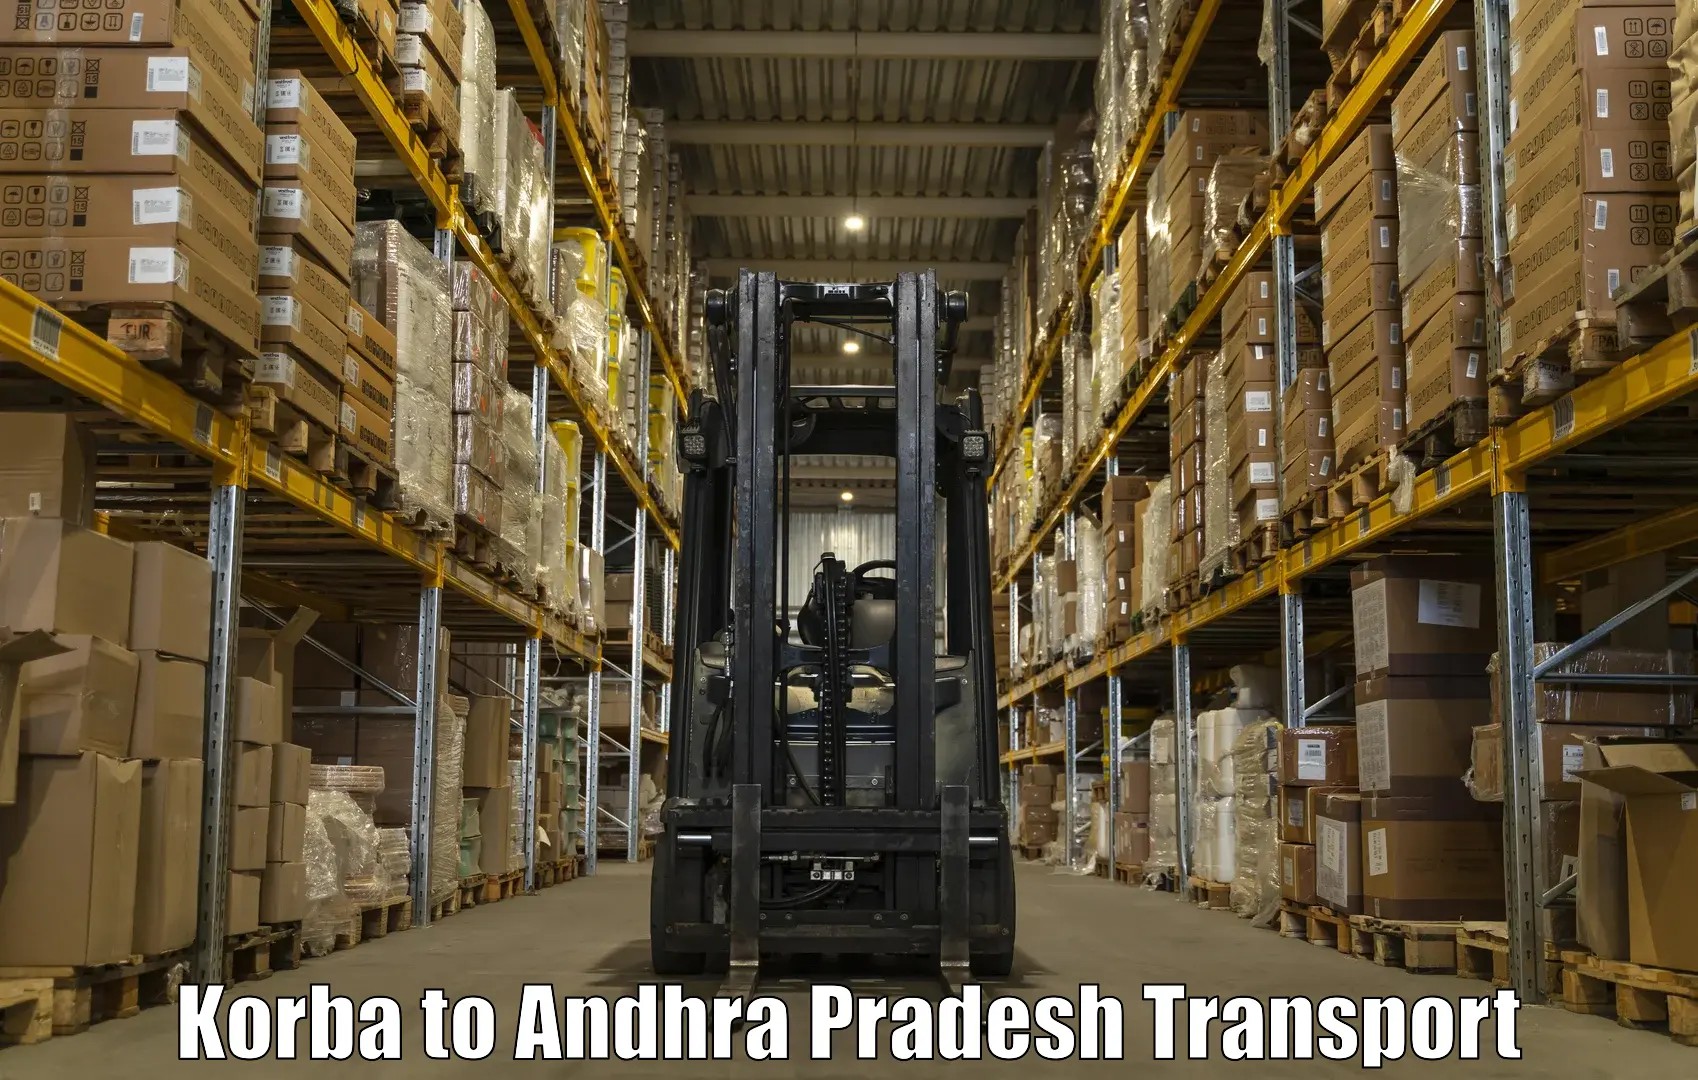 Best transport services in India Korba to Narsipatnam